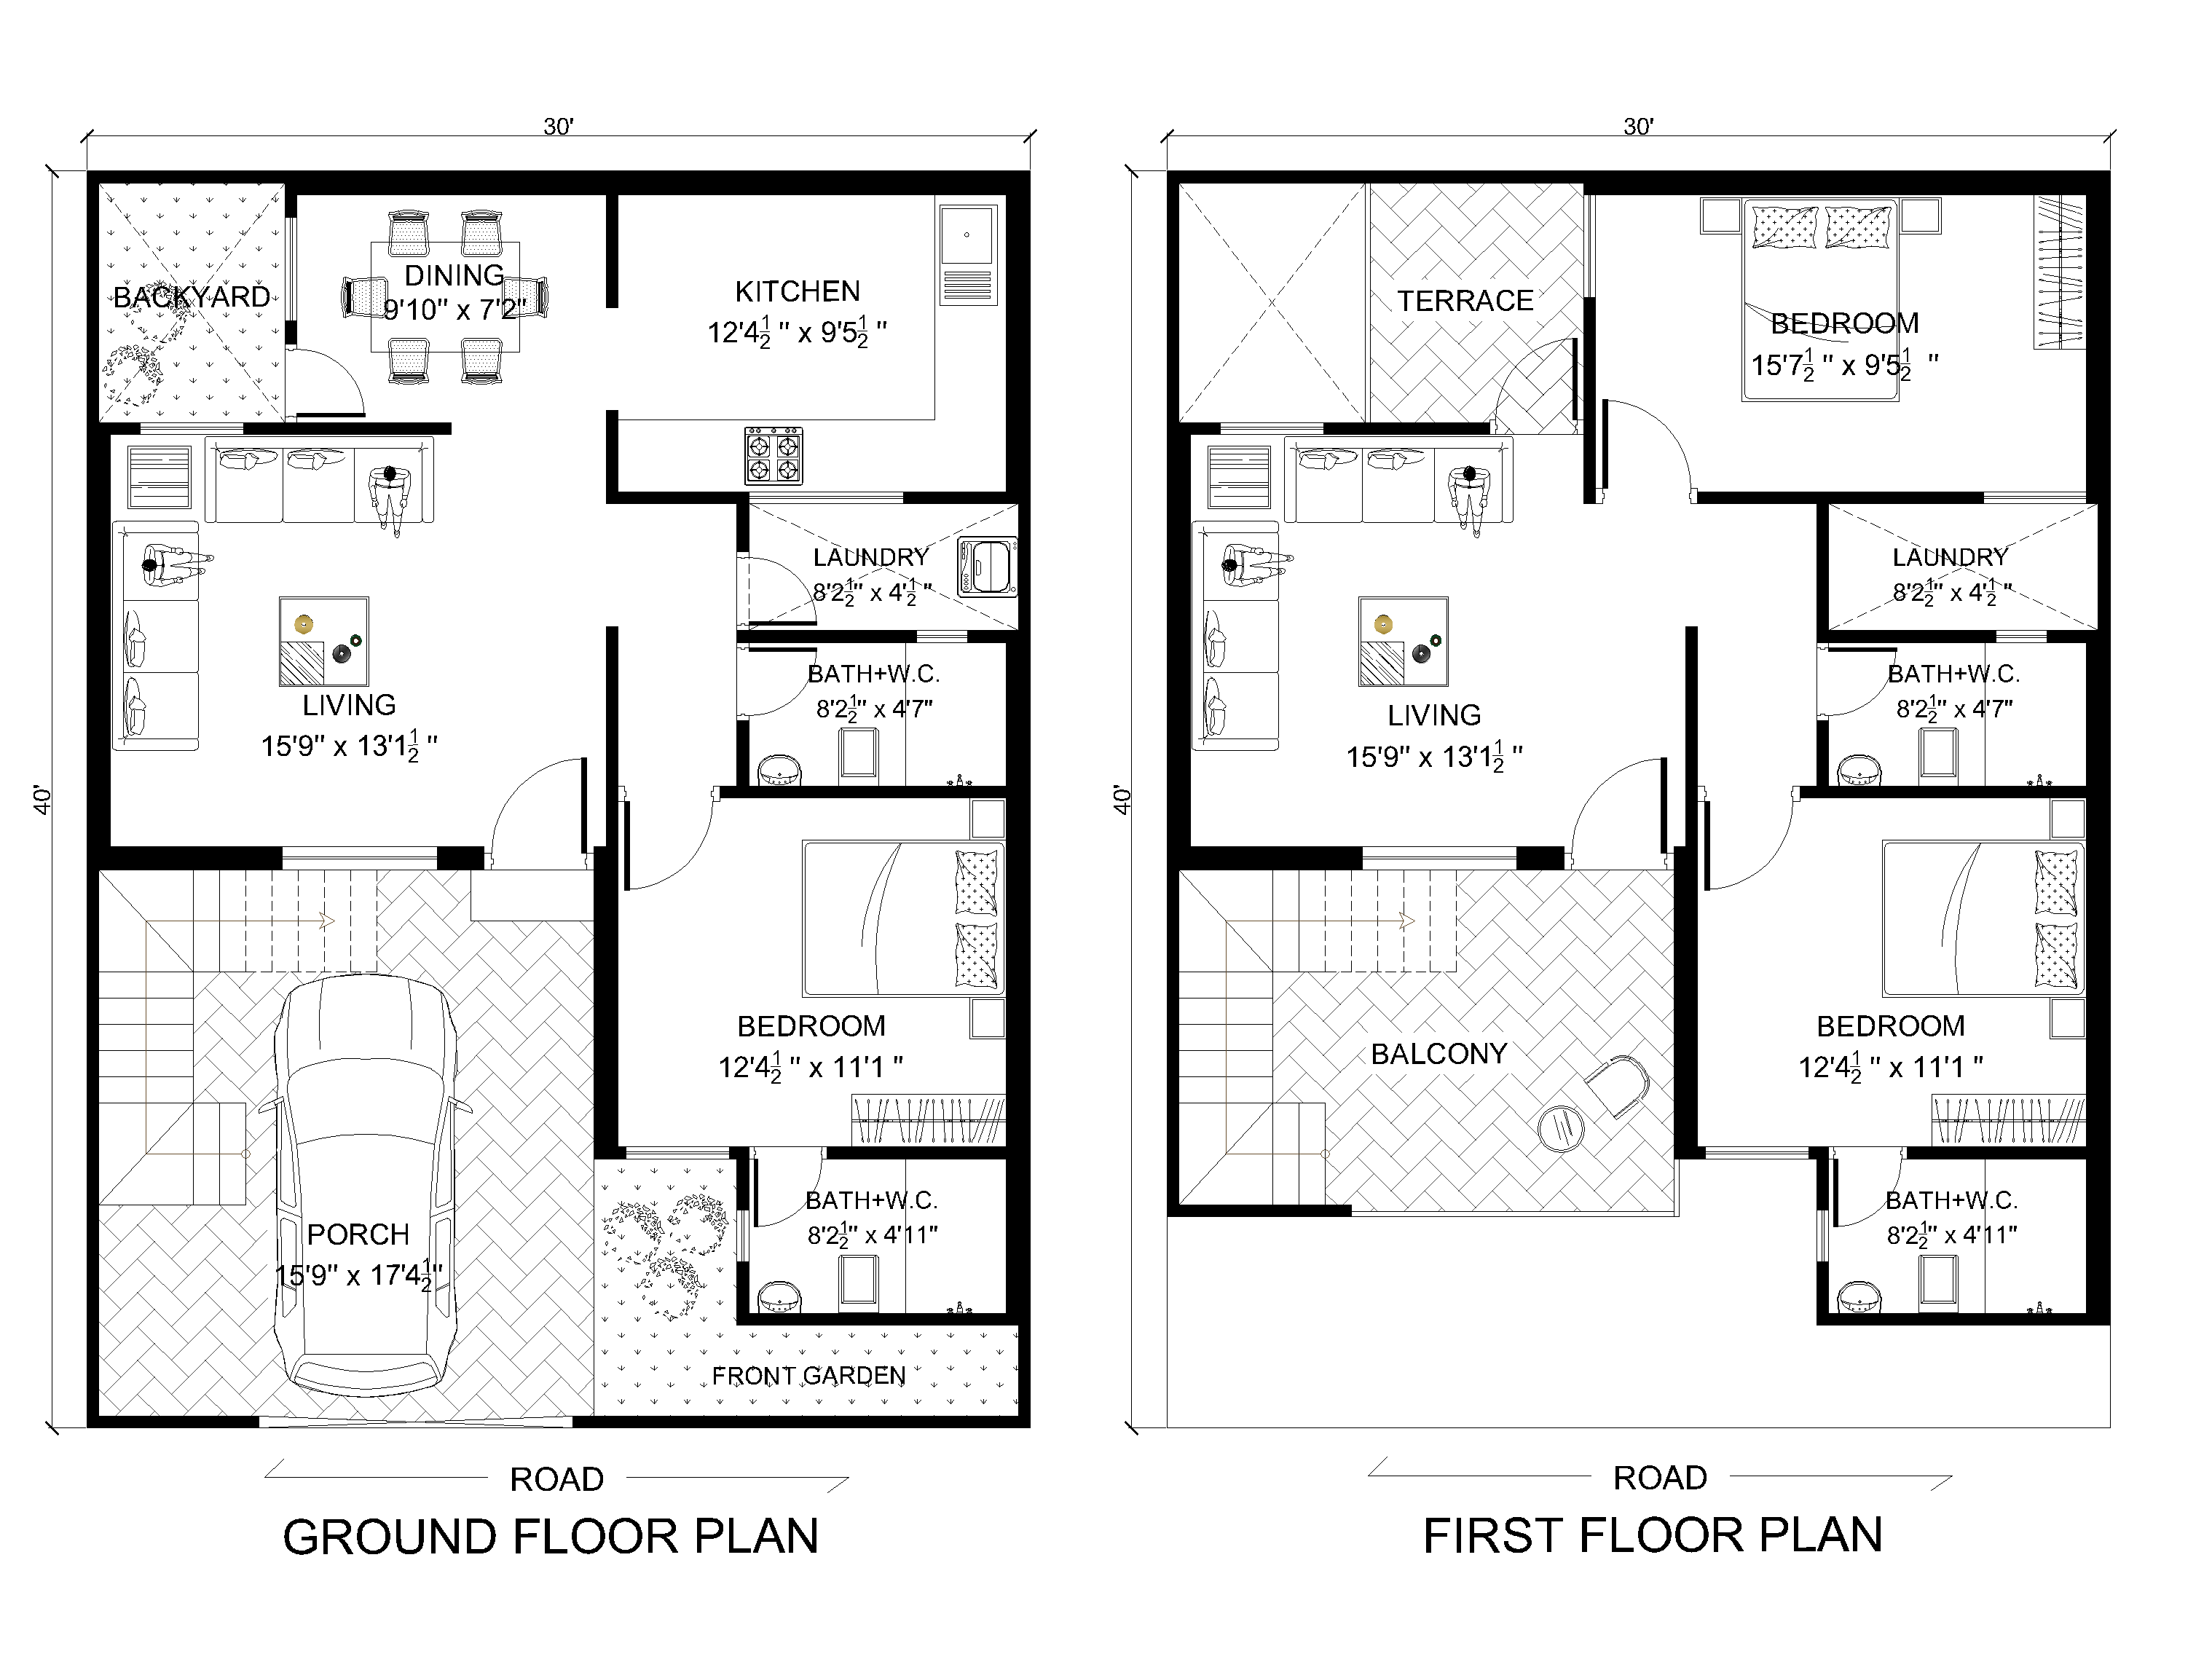 X West Facing Duplex Second Floor House Plan Duplex Floor Plans